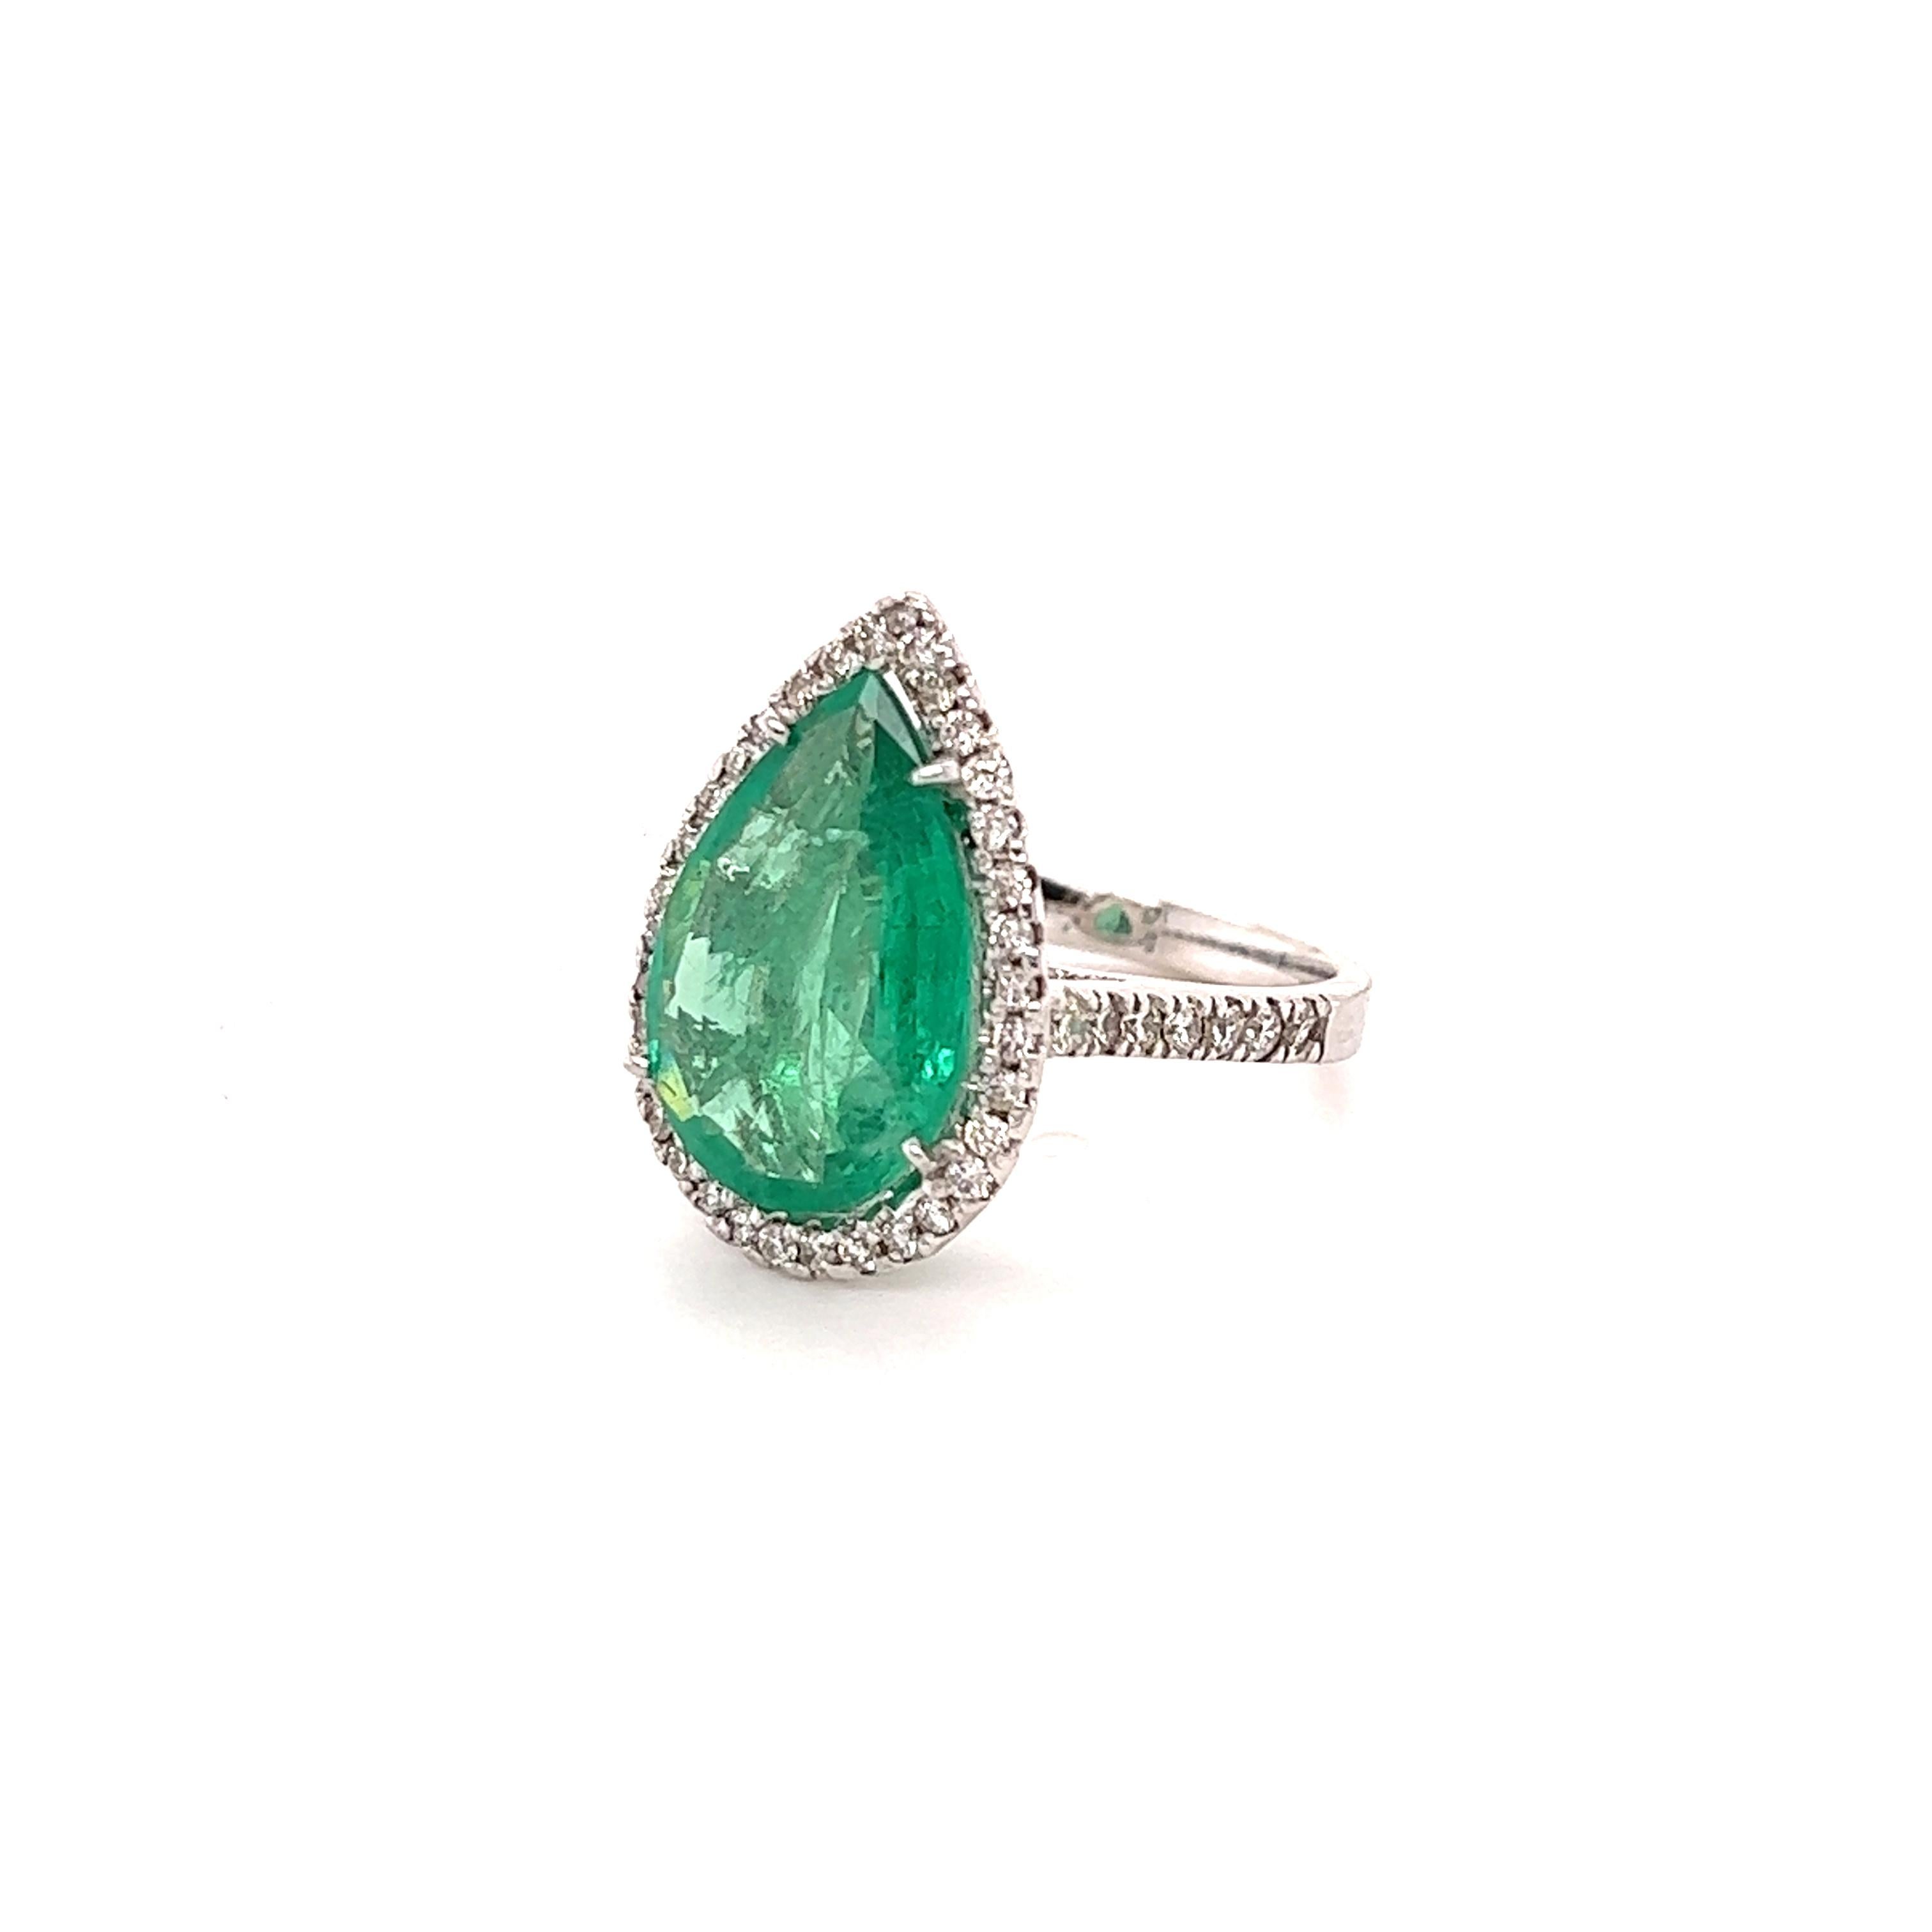 Dieser Ring hat einen Smaragd im Birnenschliff mit einem Gewicht von 4,19 Karat. Er hat 49 Diamanten im Rundschliff mit einem Gewicht von 0,64 Karat. Das Gesamtkaratgewicht dieses Rings beträgt 4,83 Karat. 

Der Smaragd im Birnenschliff misst 17 mm